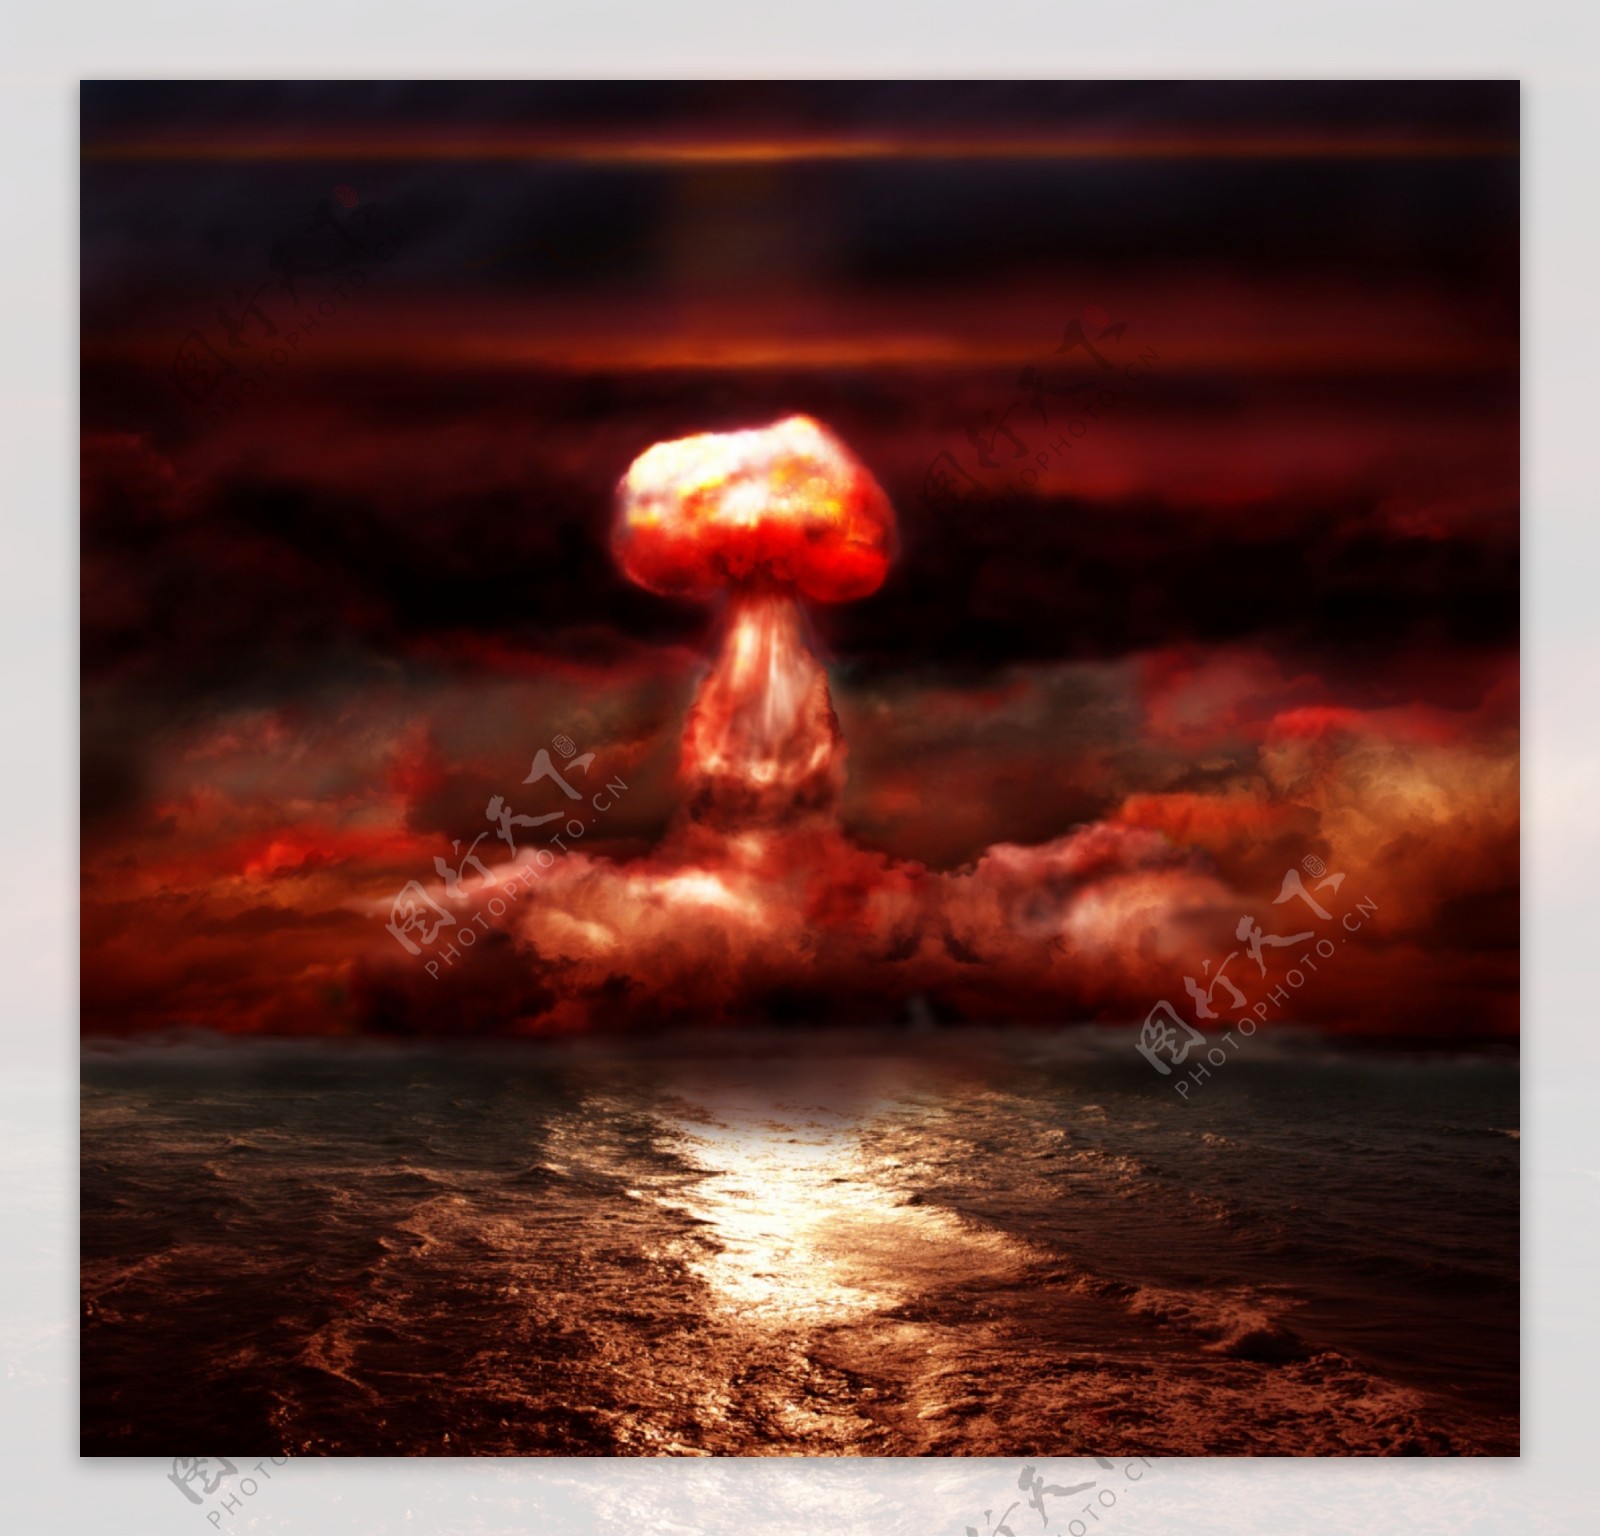 海边原子弹爆炸